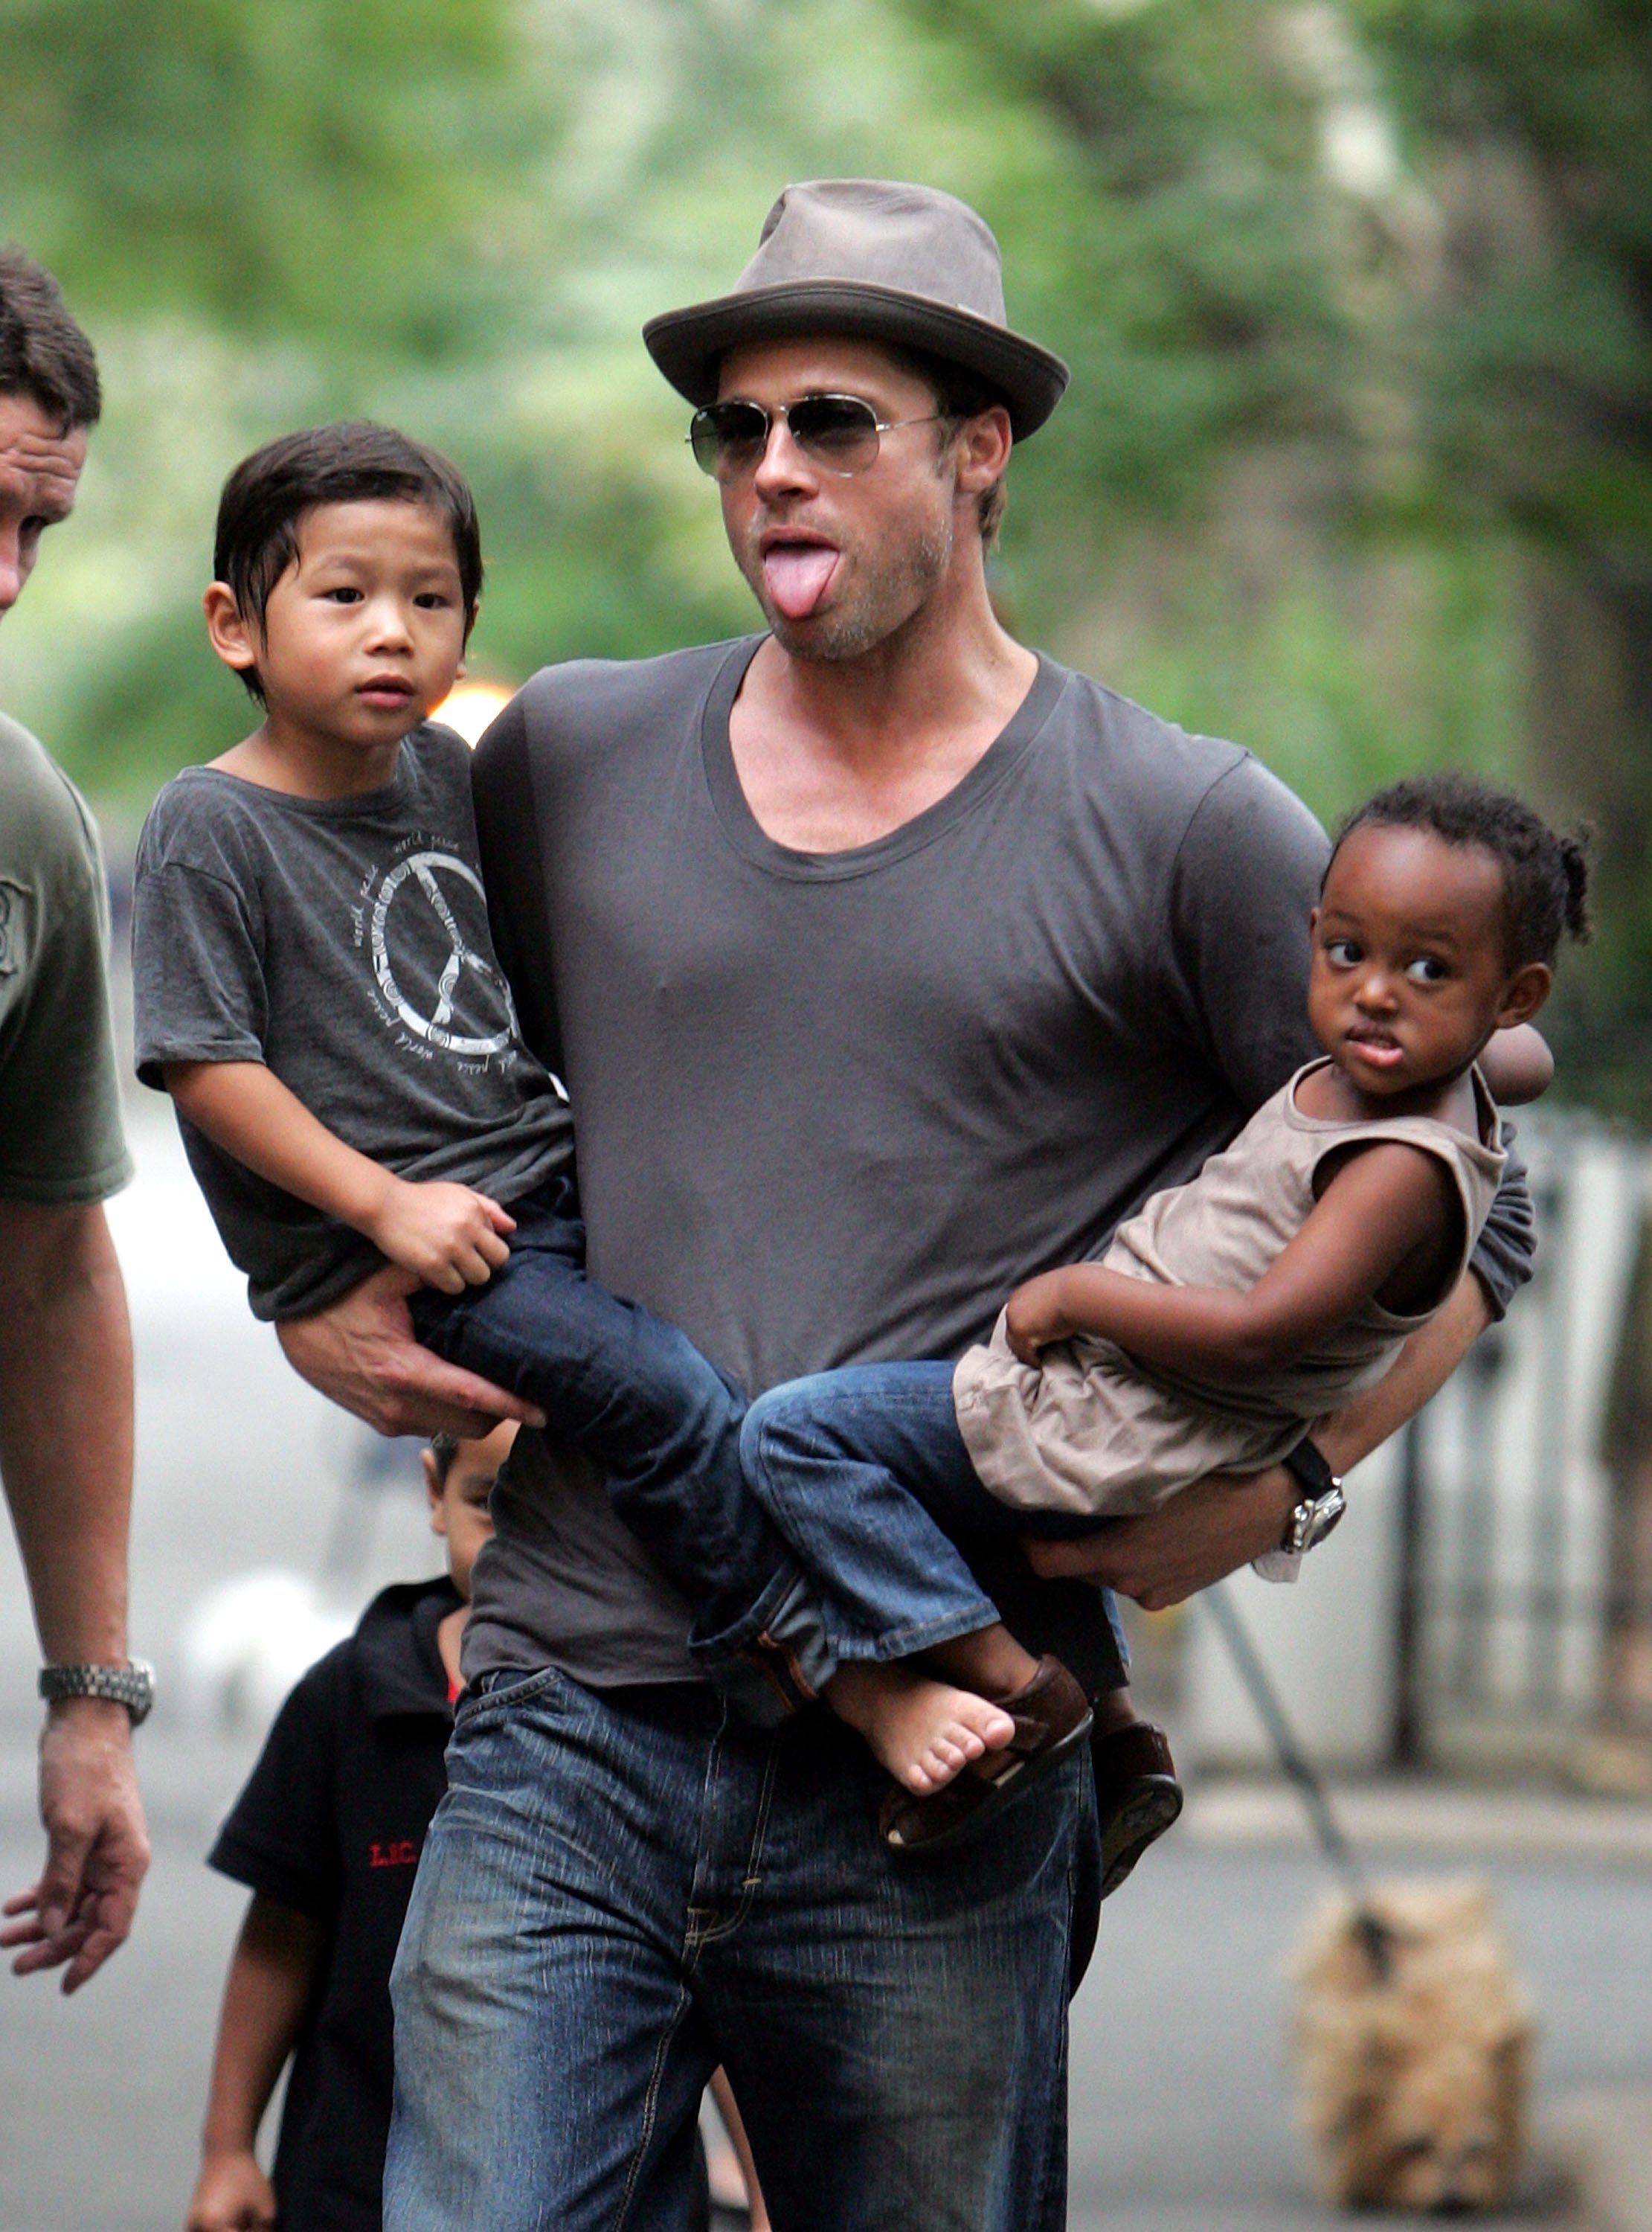 Brad Pitt visite une aire de jeux avec ses enfants Zahara, Pax et Maddox Jolie-Pitt le 26 août 2007 à New York. | Source : Getty Images